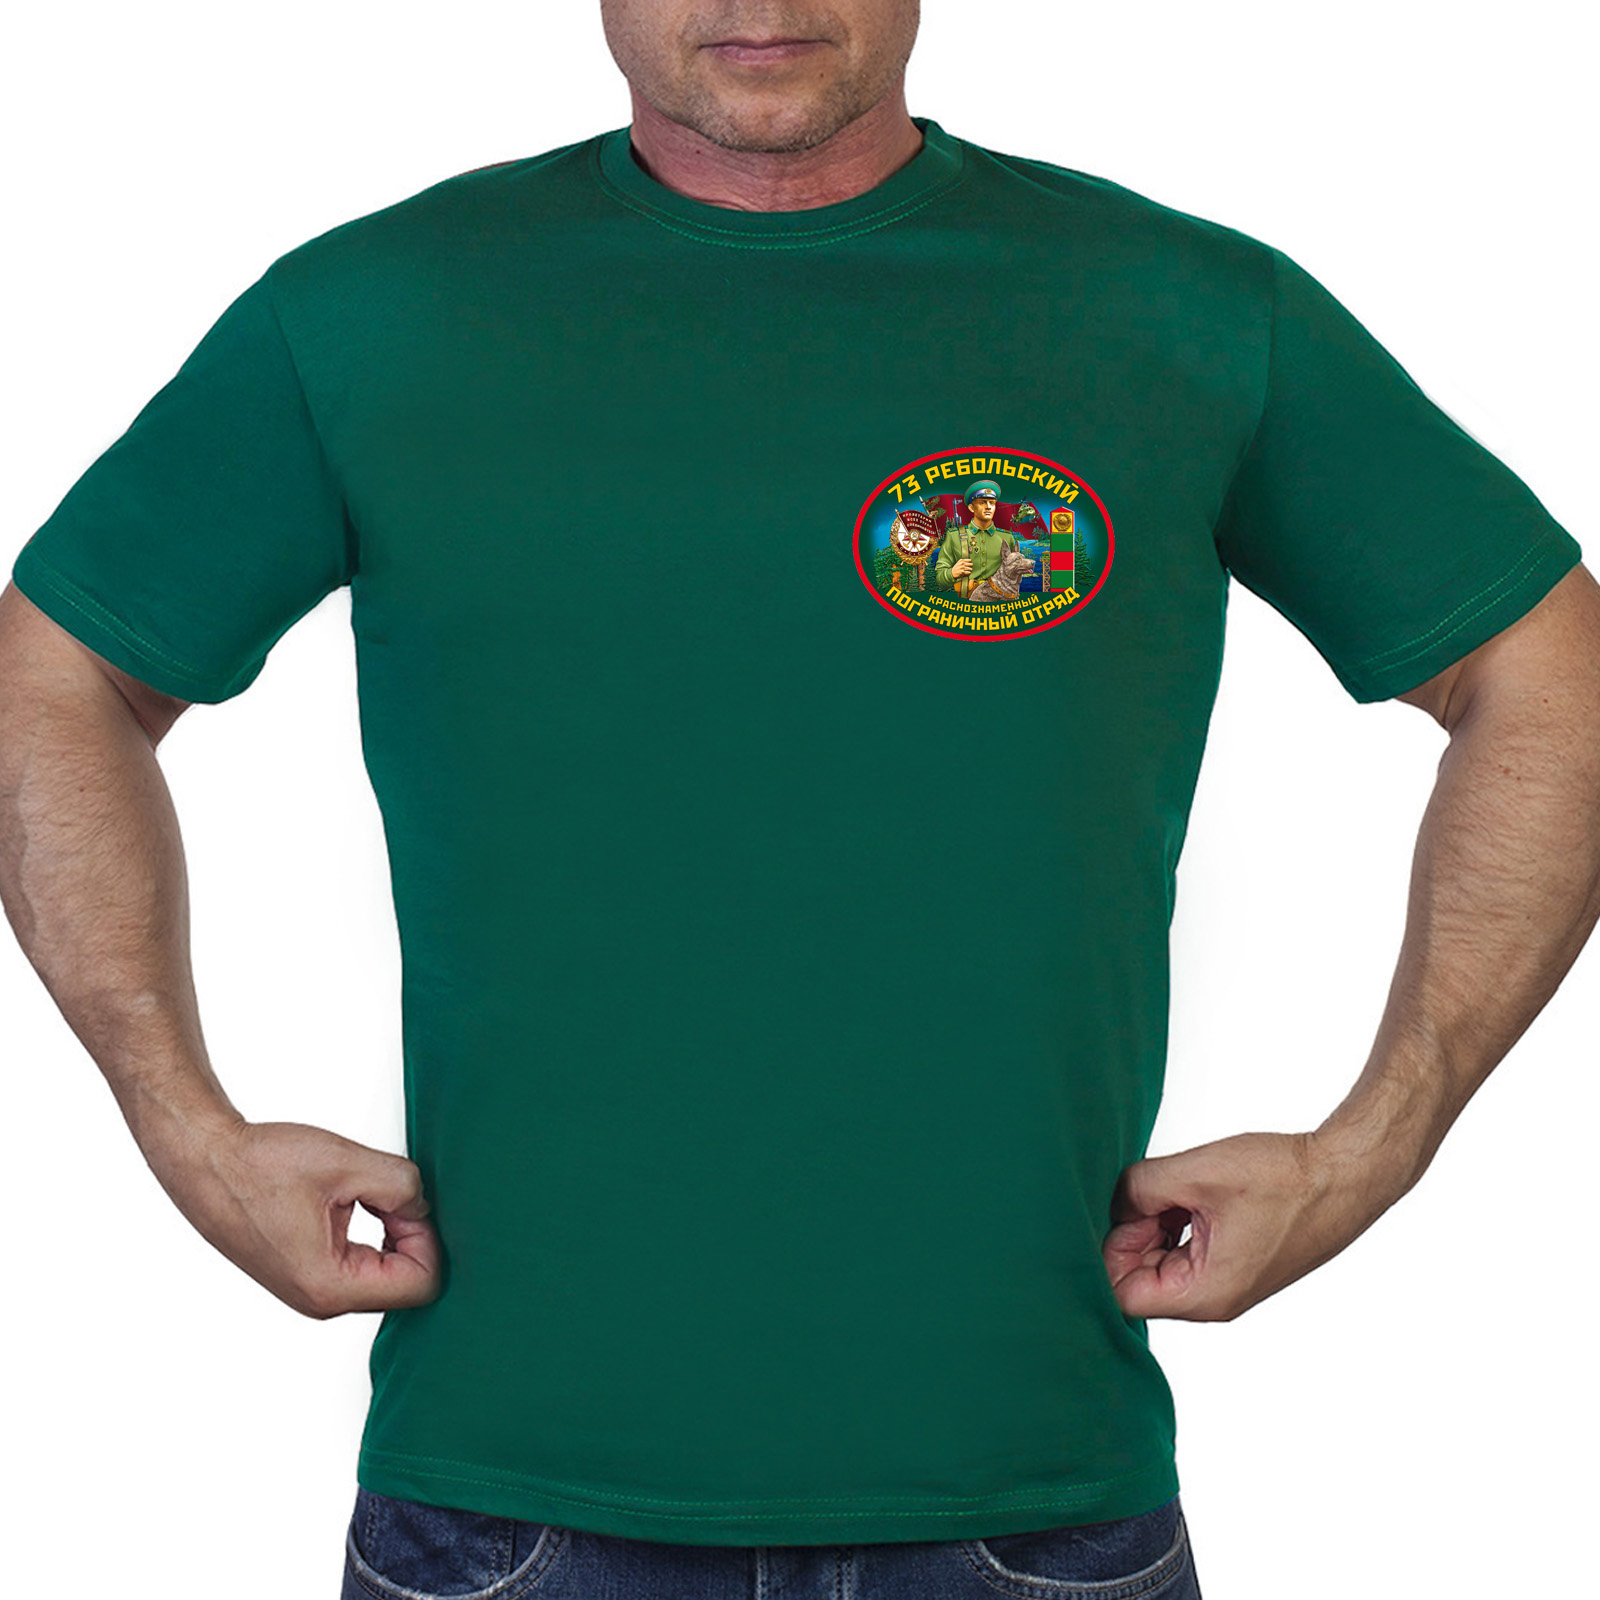 Зелёная футболка "73 Ребольского пограничного отряда"